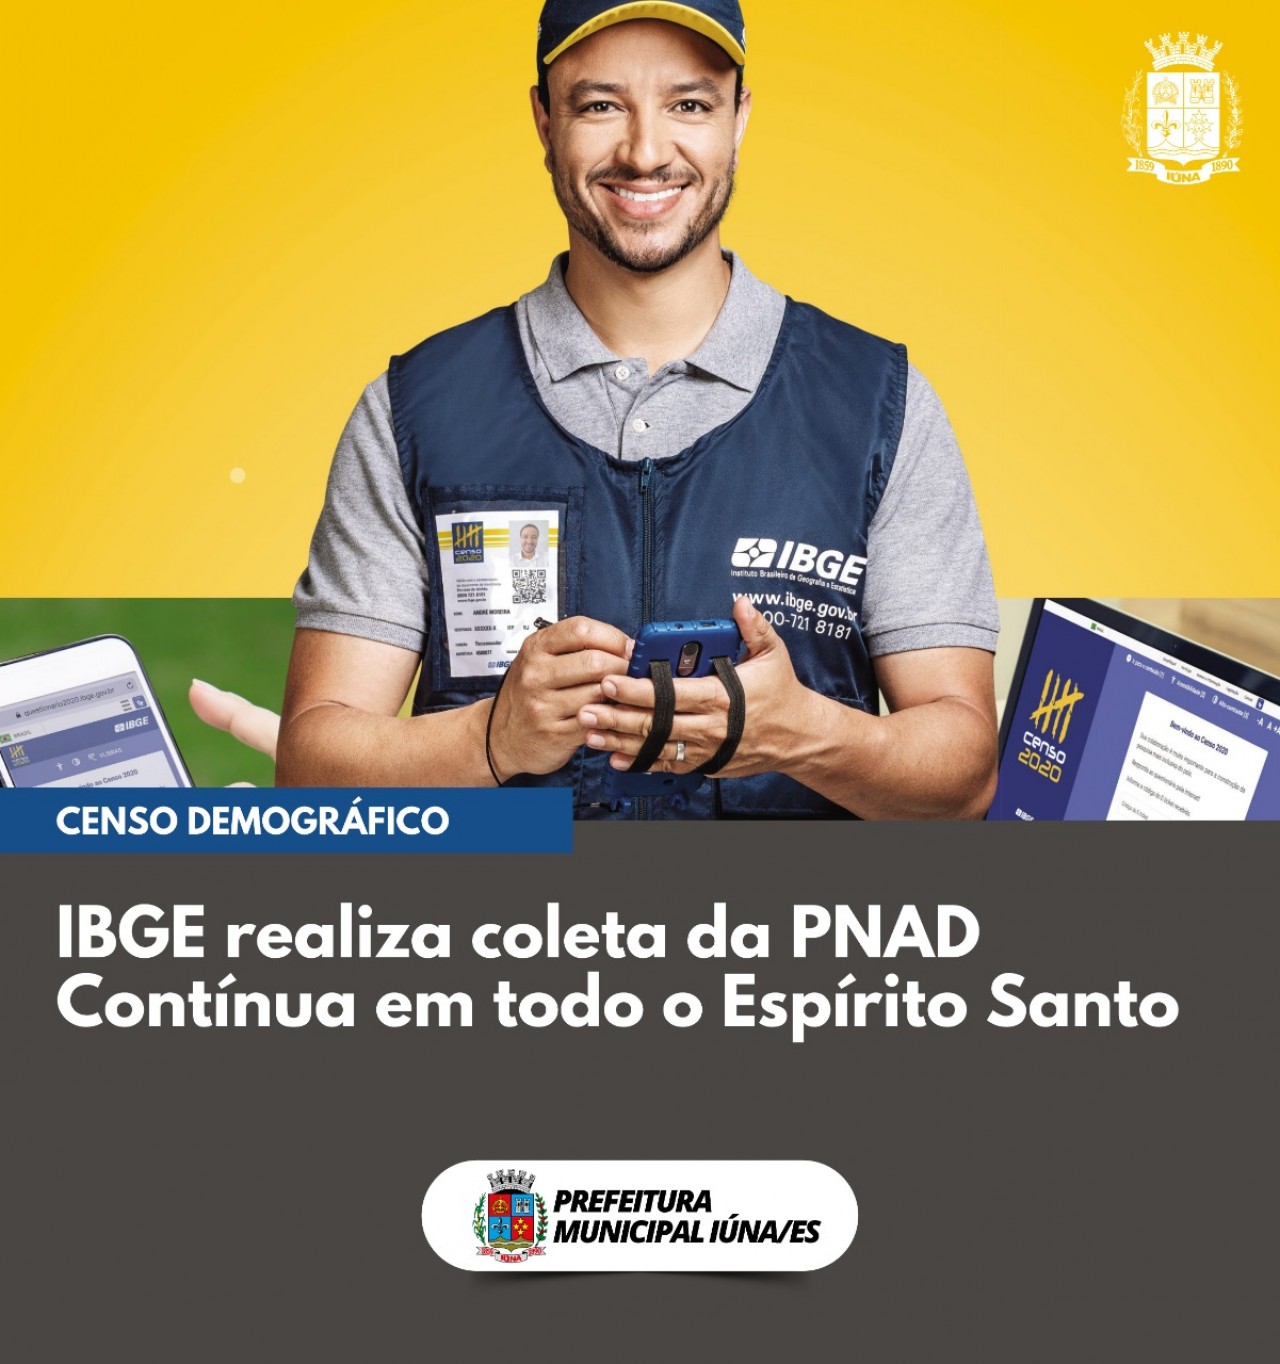 IBGE realiza coleta da PNAD contínua em todo o Espírito Santo.